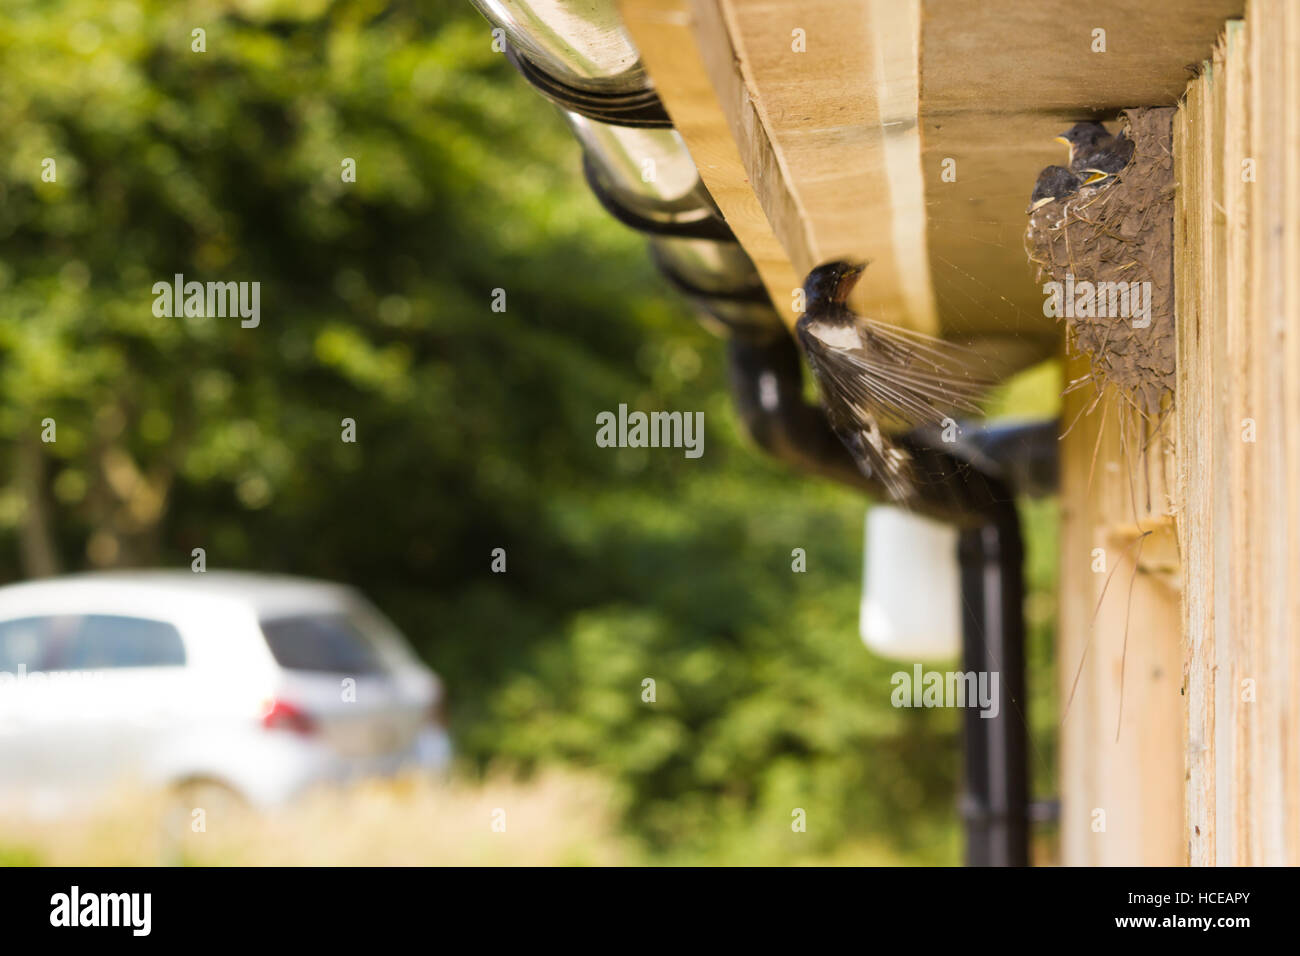 Hirundo rustica Golondrina africana, un adulto llega a su nido para hacer una visita para alimentar a sus polluelos, St Mary's, Isles of Scilly, Reino Unido, Julio Foto de stock